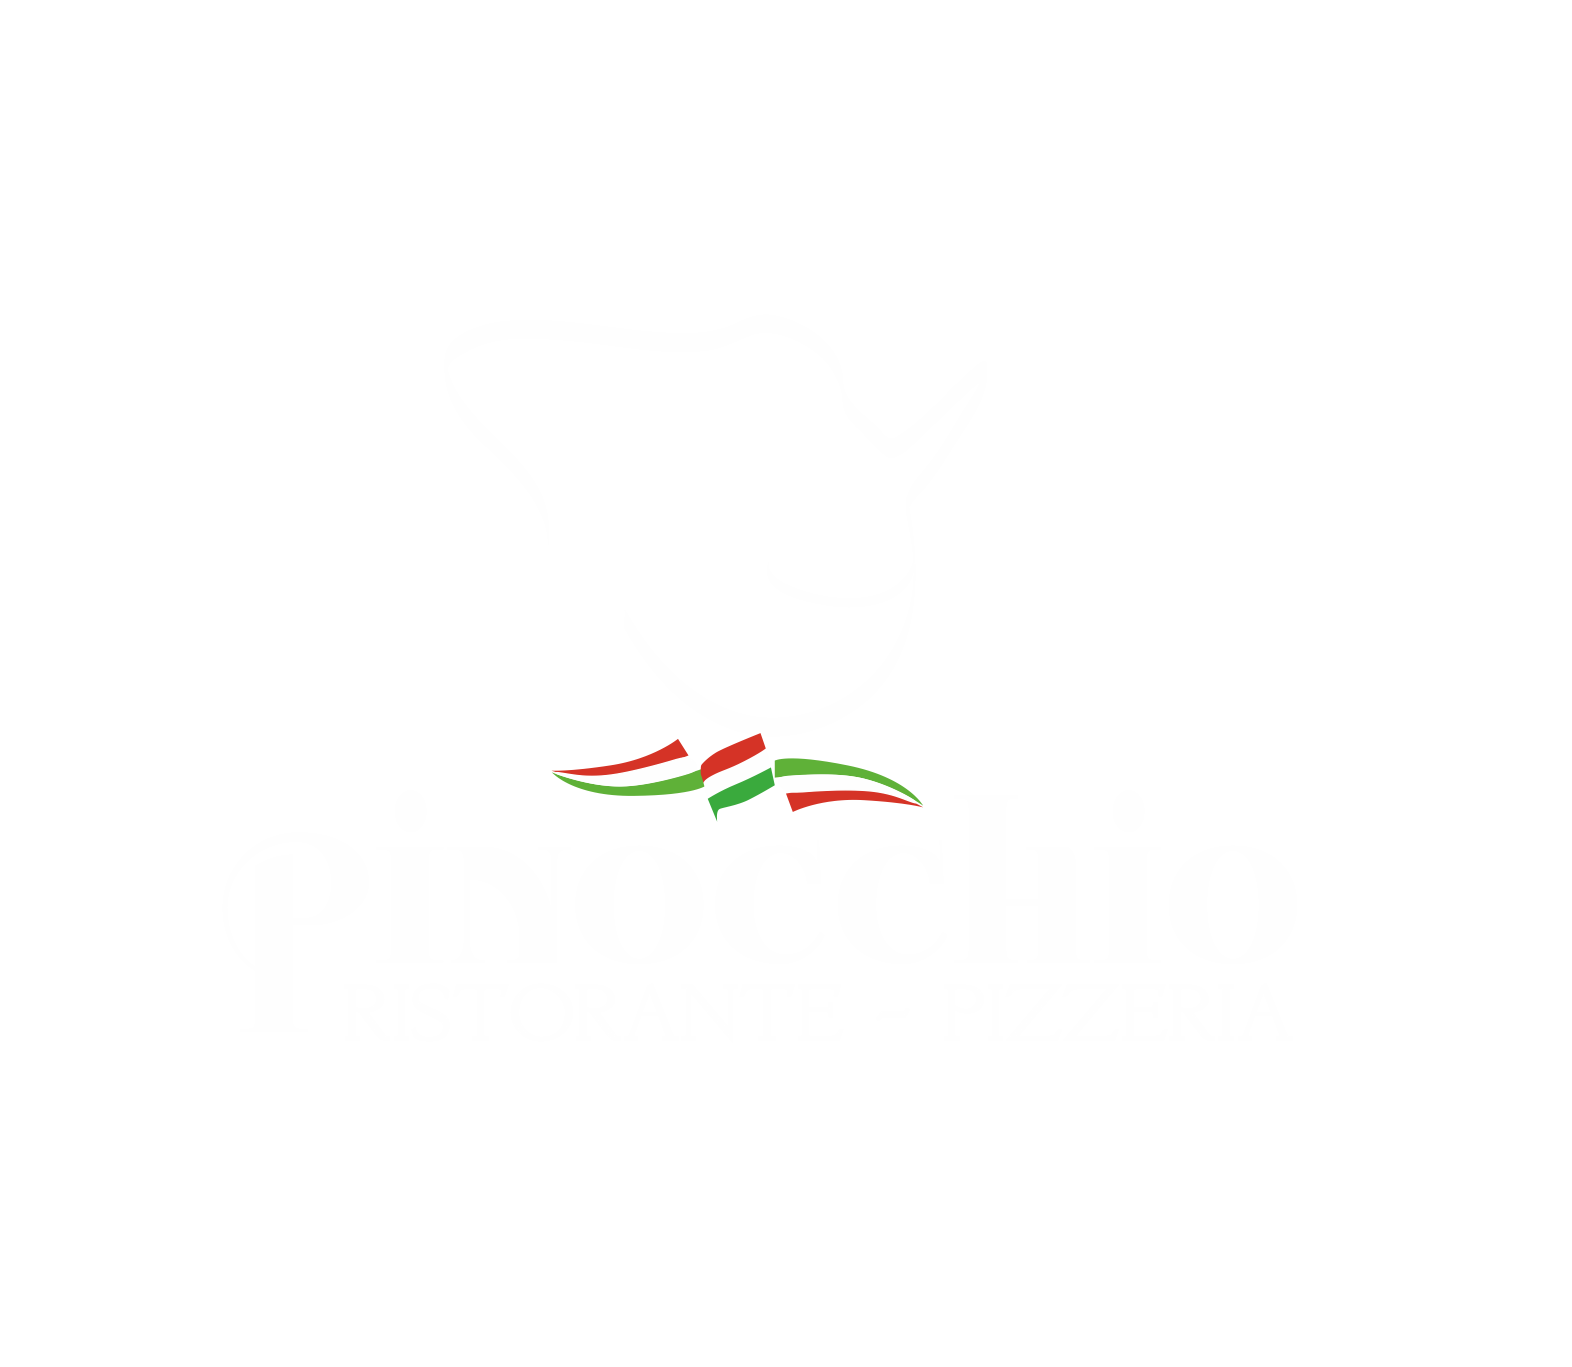 Restaurante Pinocchio